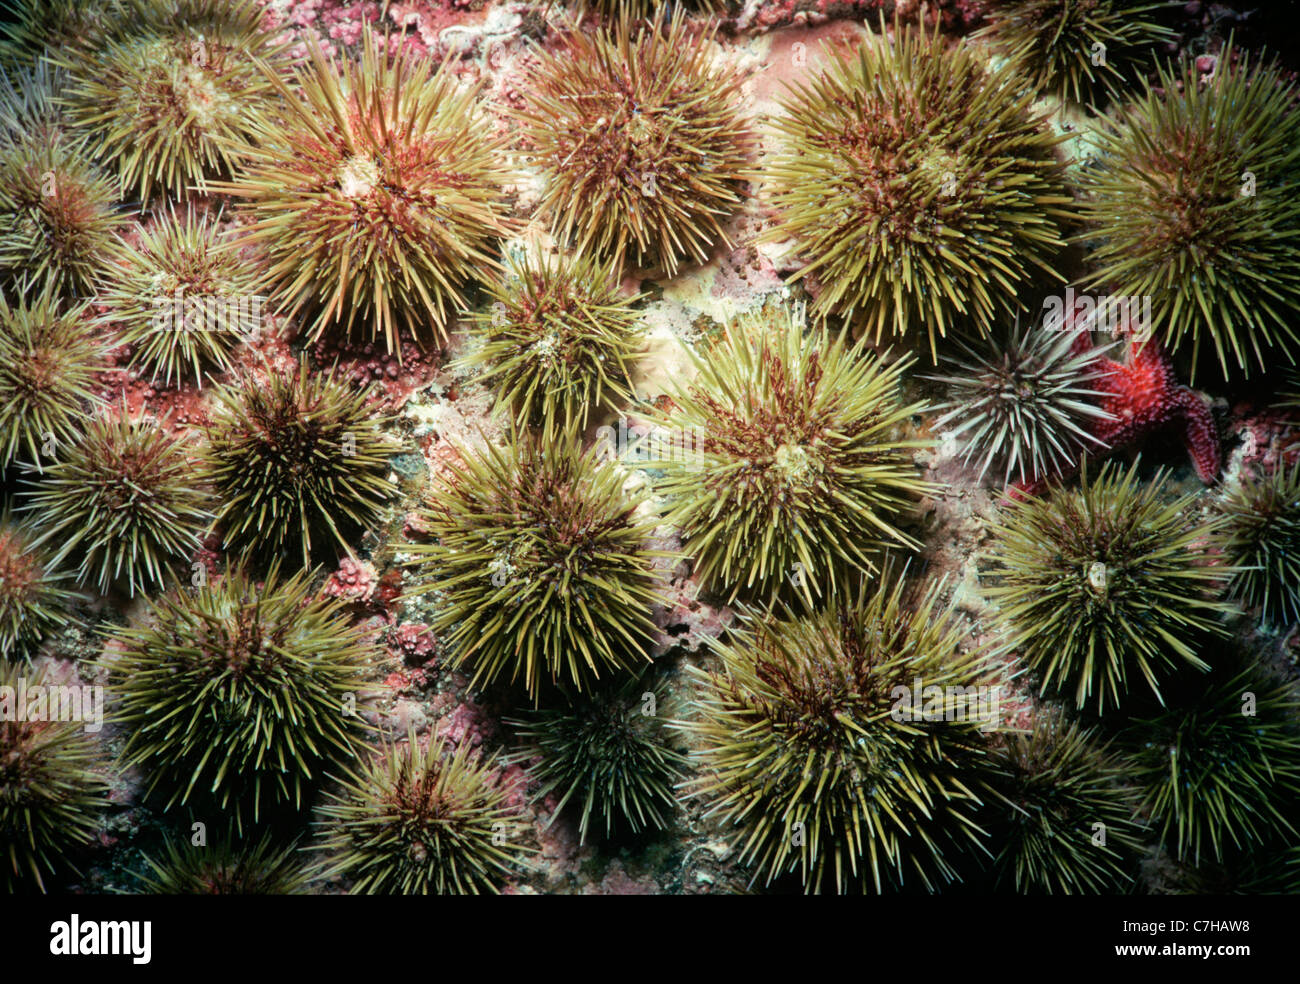 Green ricci di mare (stronglyocentrotus droebachiensis) lavaggio ed al pascolo. La Nuova Inghilterra (USA) - Oceano Atlantico settentrionale Foto Stock